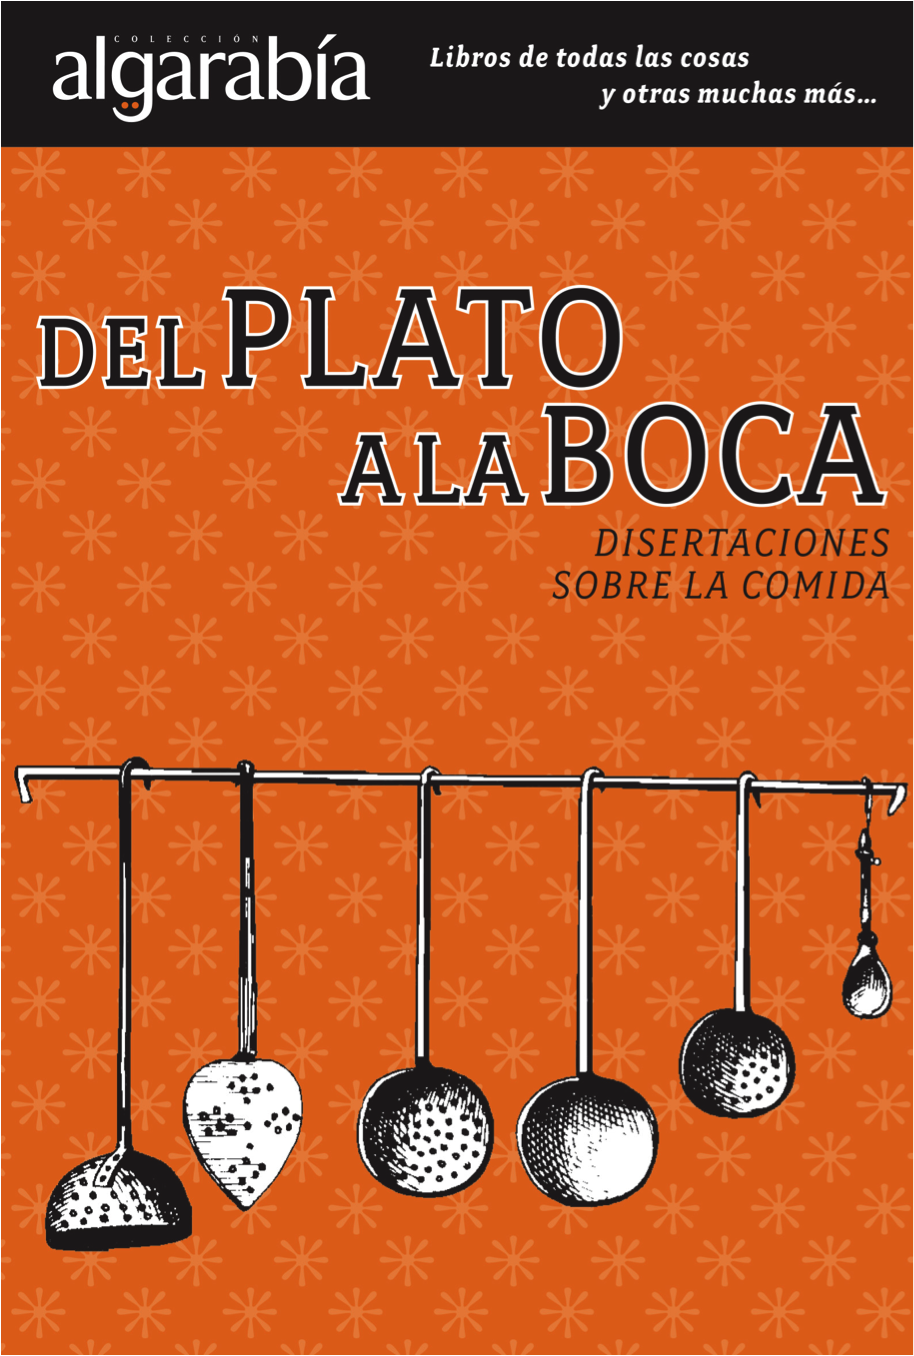 Texto extraído del libro 'Del plato a la boca: disertaciones sobre la comida', Algarabía editorial. México: 2012. 